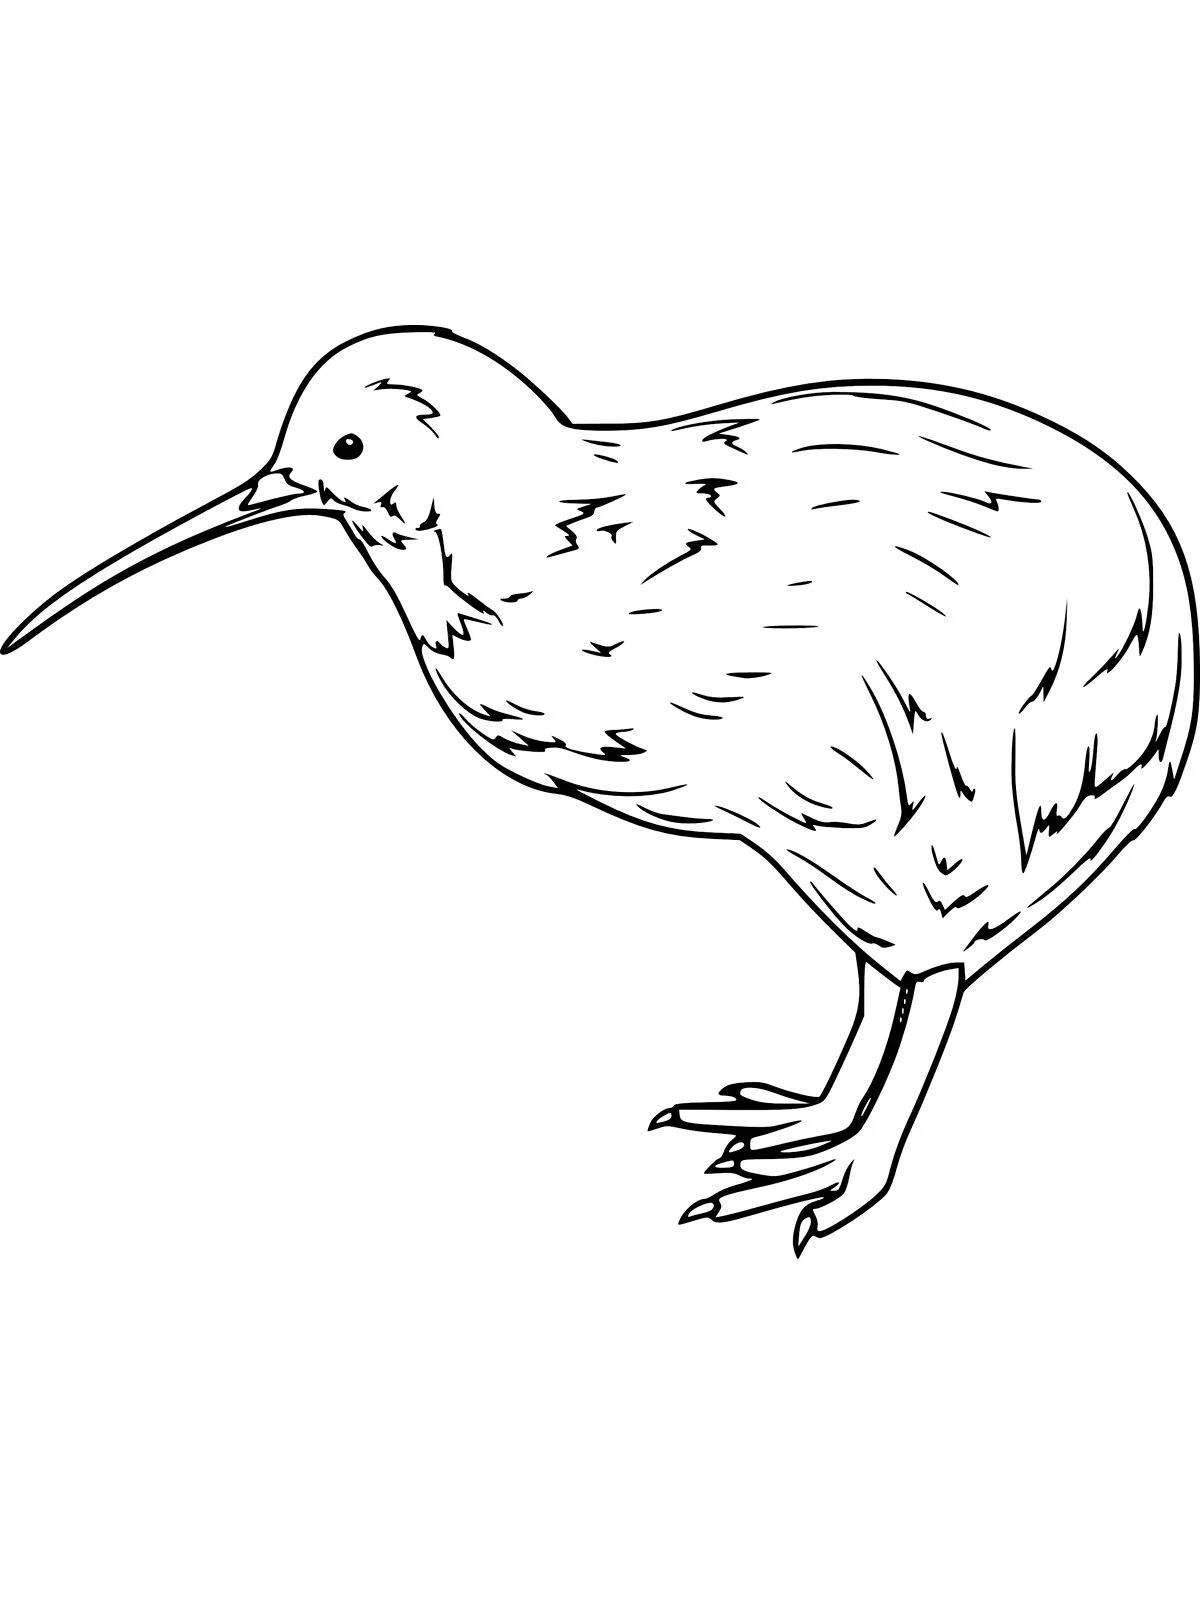 Gorgeous kiwi bird coloring book